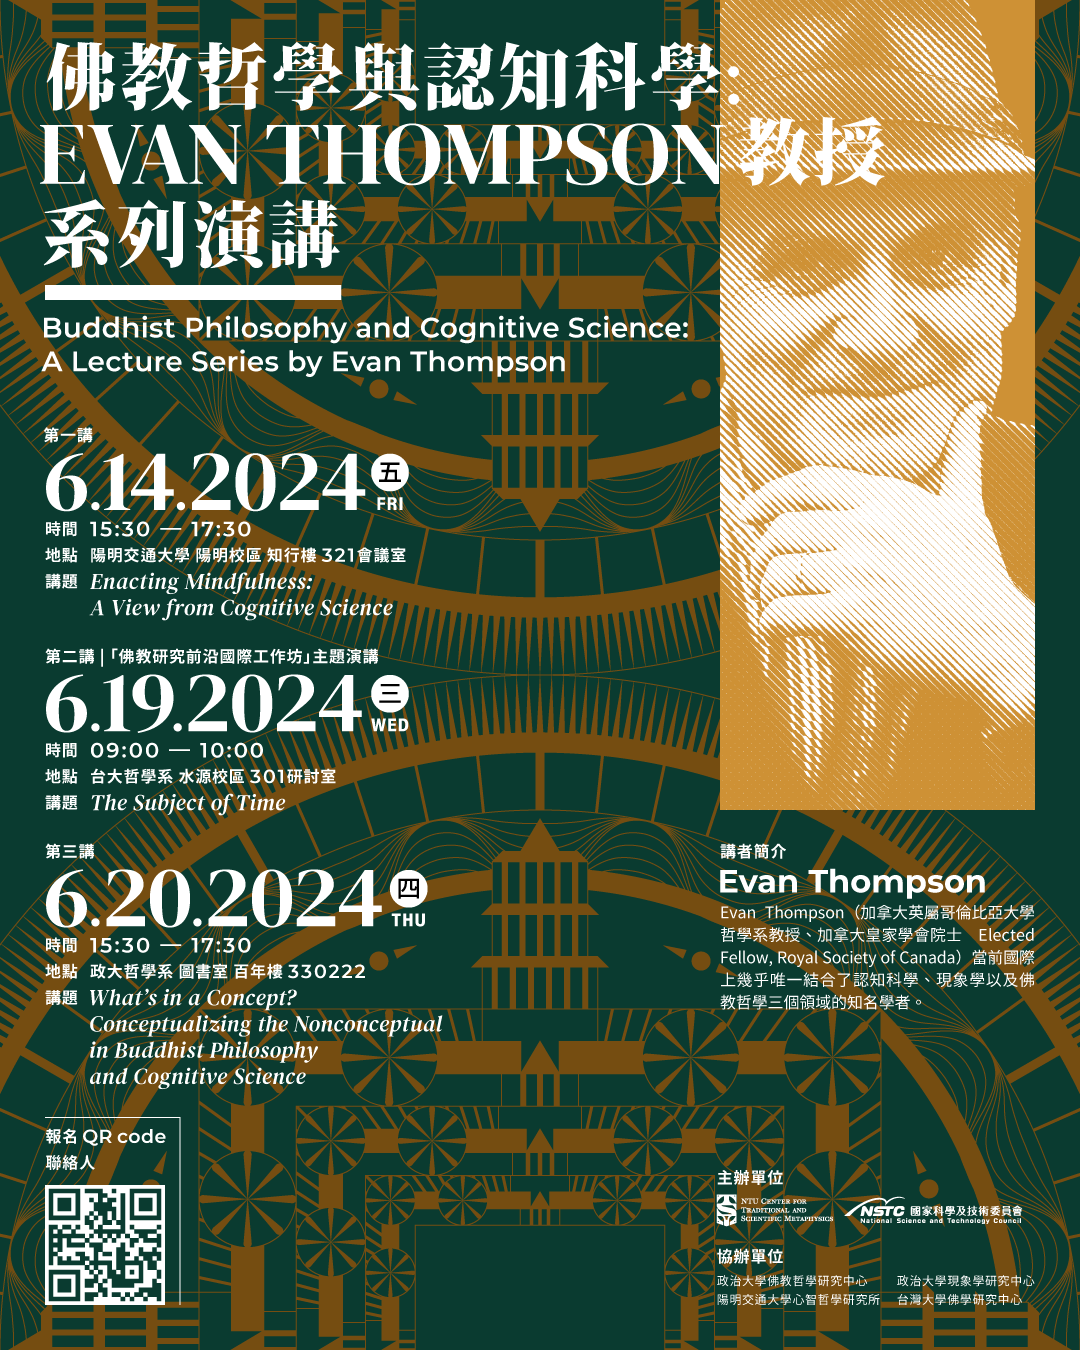 「佛教哲學與認知科學：Evan Thompson 教授系列演講」